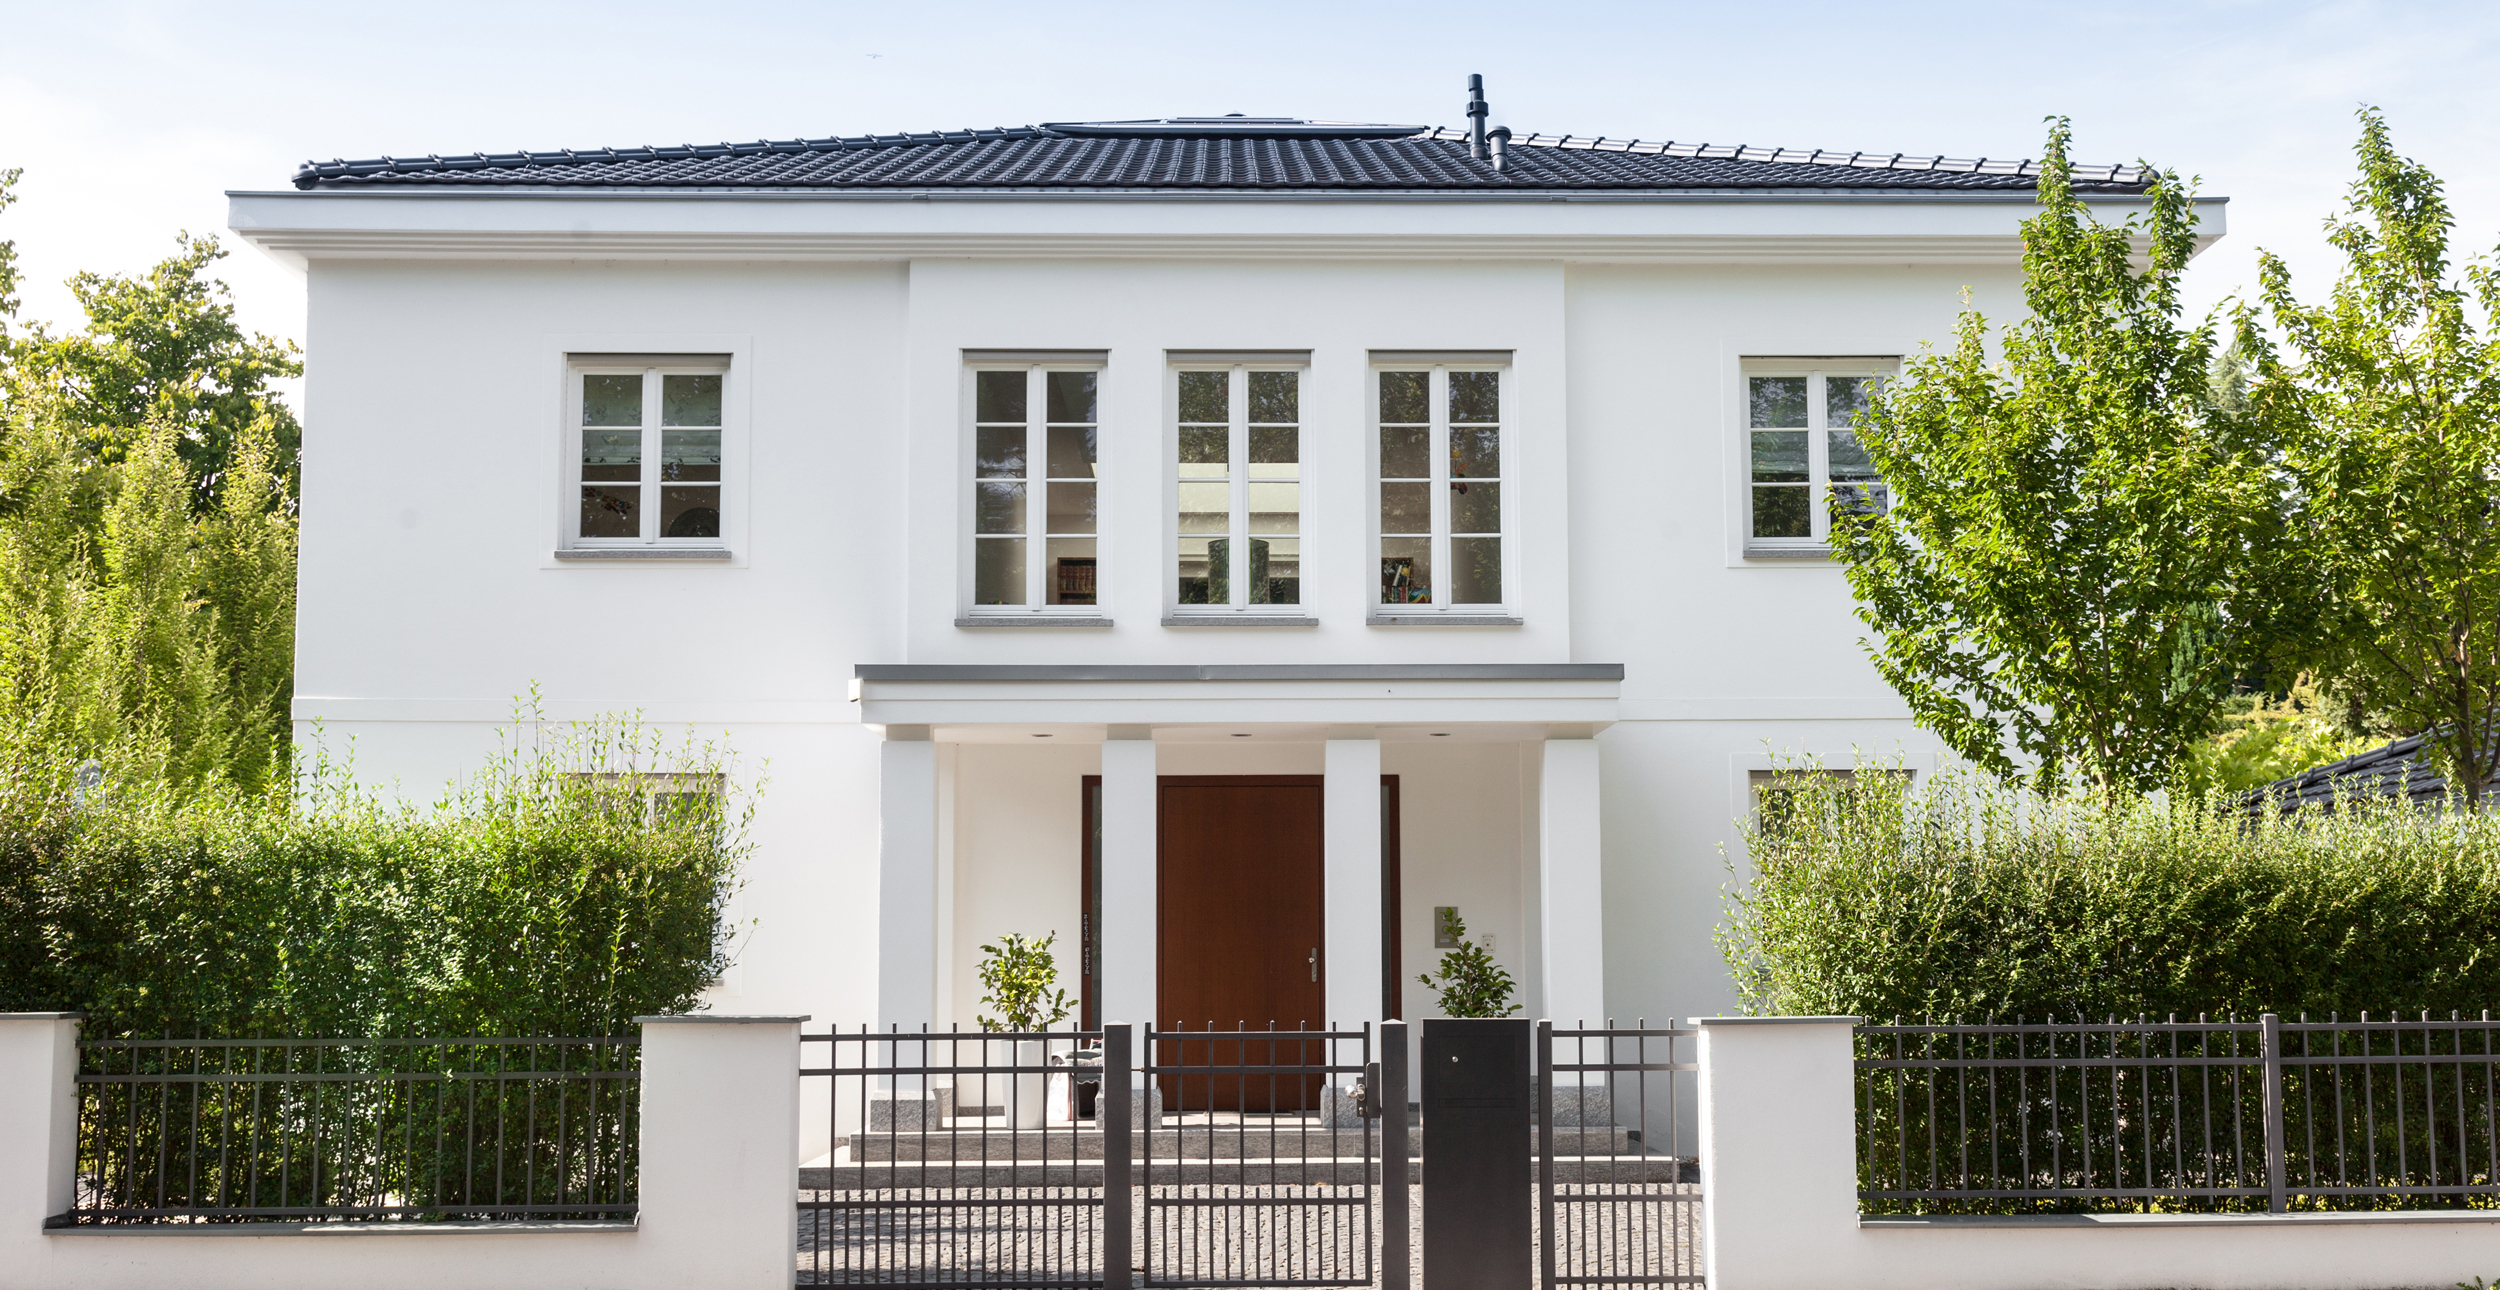 Villa verkaufen, Premium-Immobilie, Luxusimmobilie Köln.jpg 5 einfache Schritte um die eigene Villa in Köln schnell und sicher mit Immobilienmakler in Köln zu verkaufen